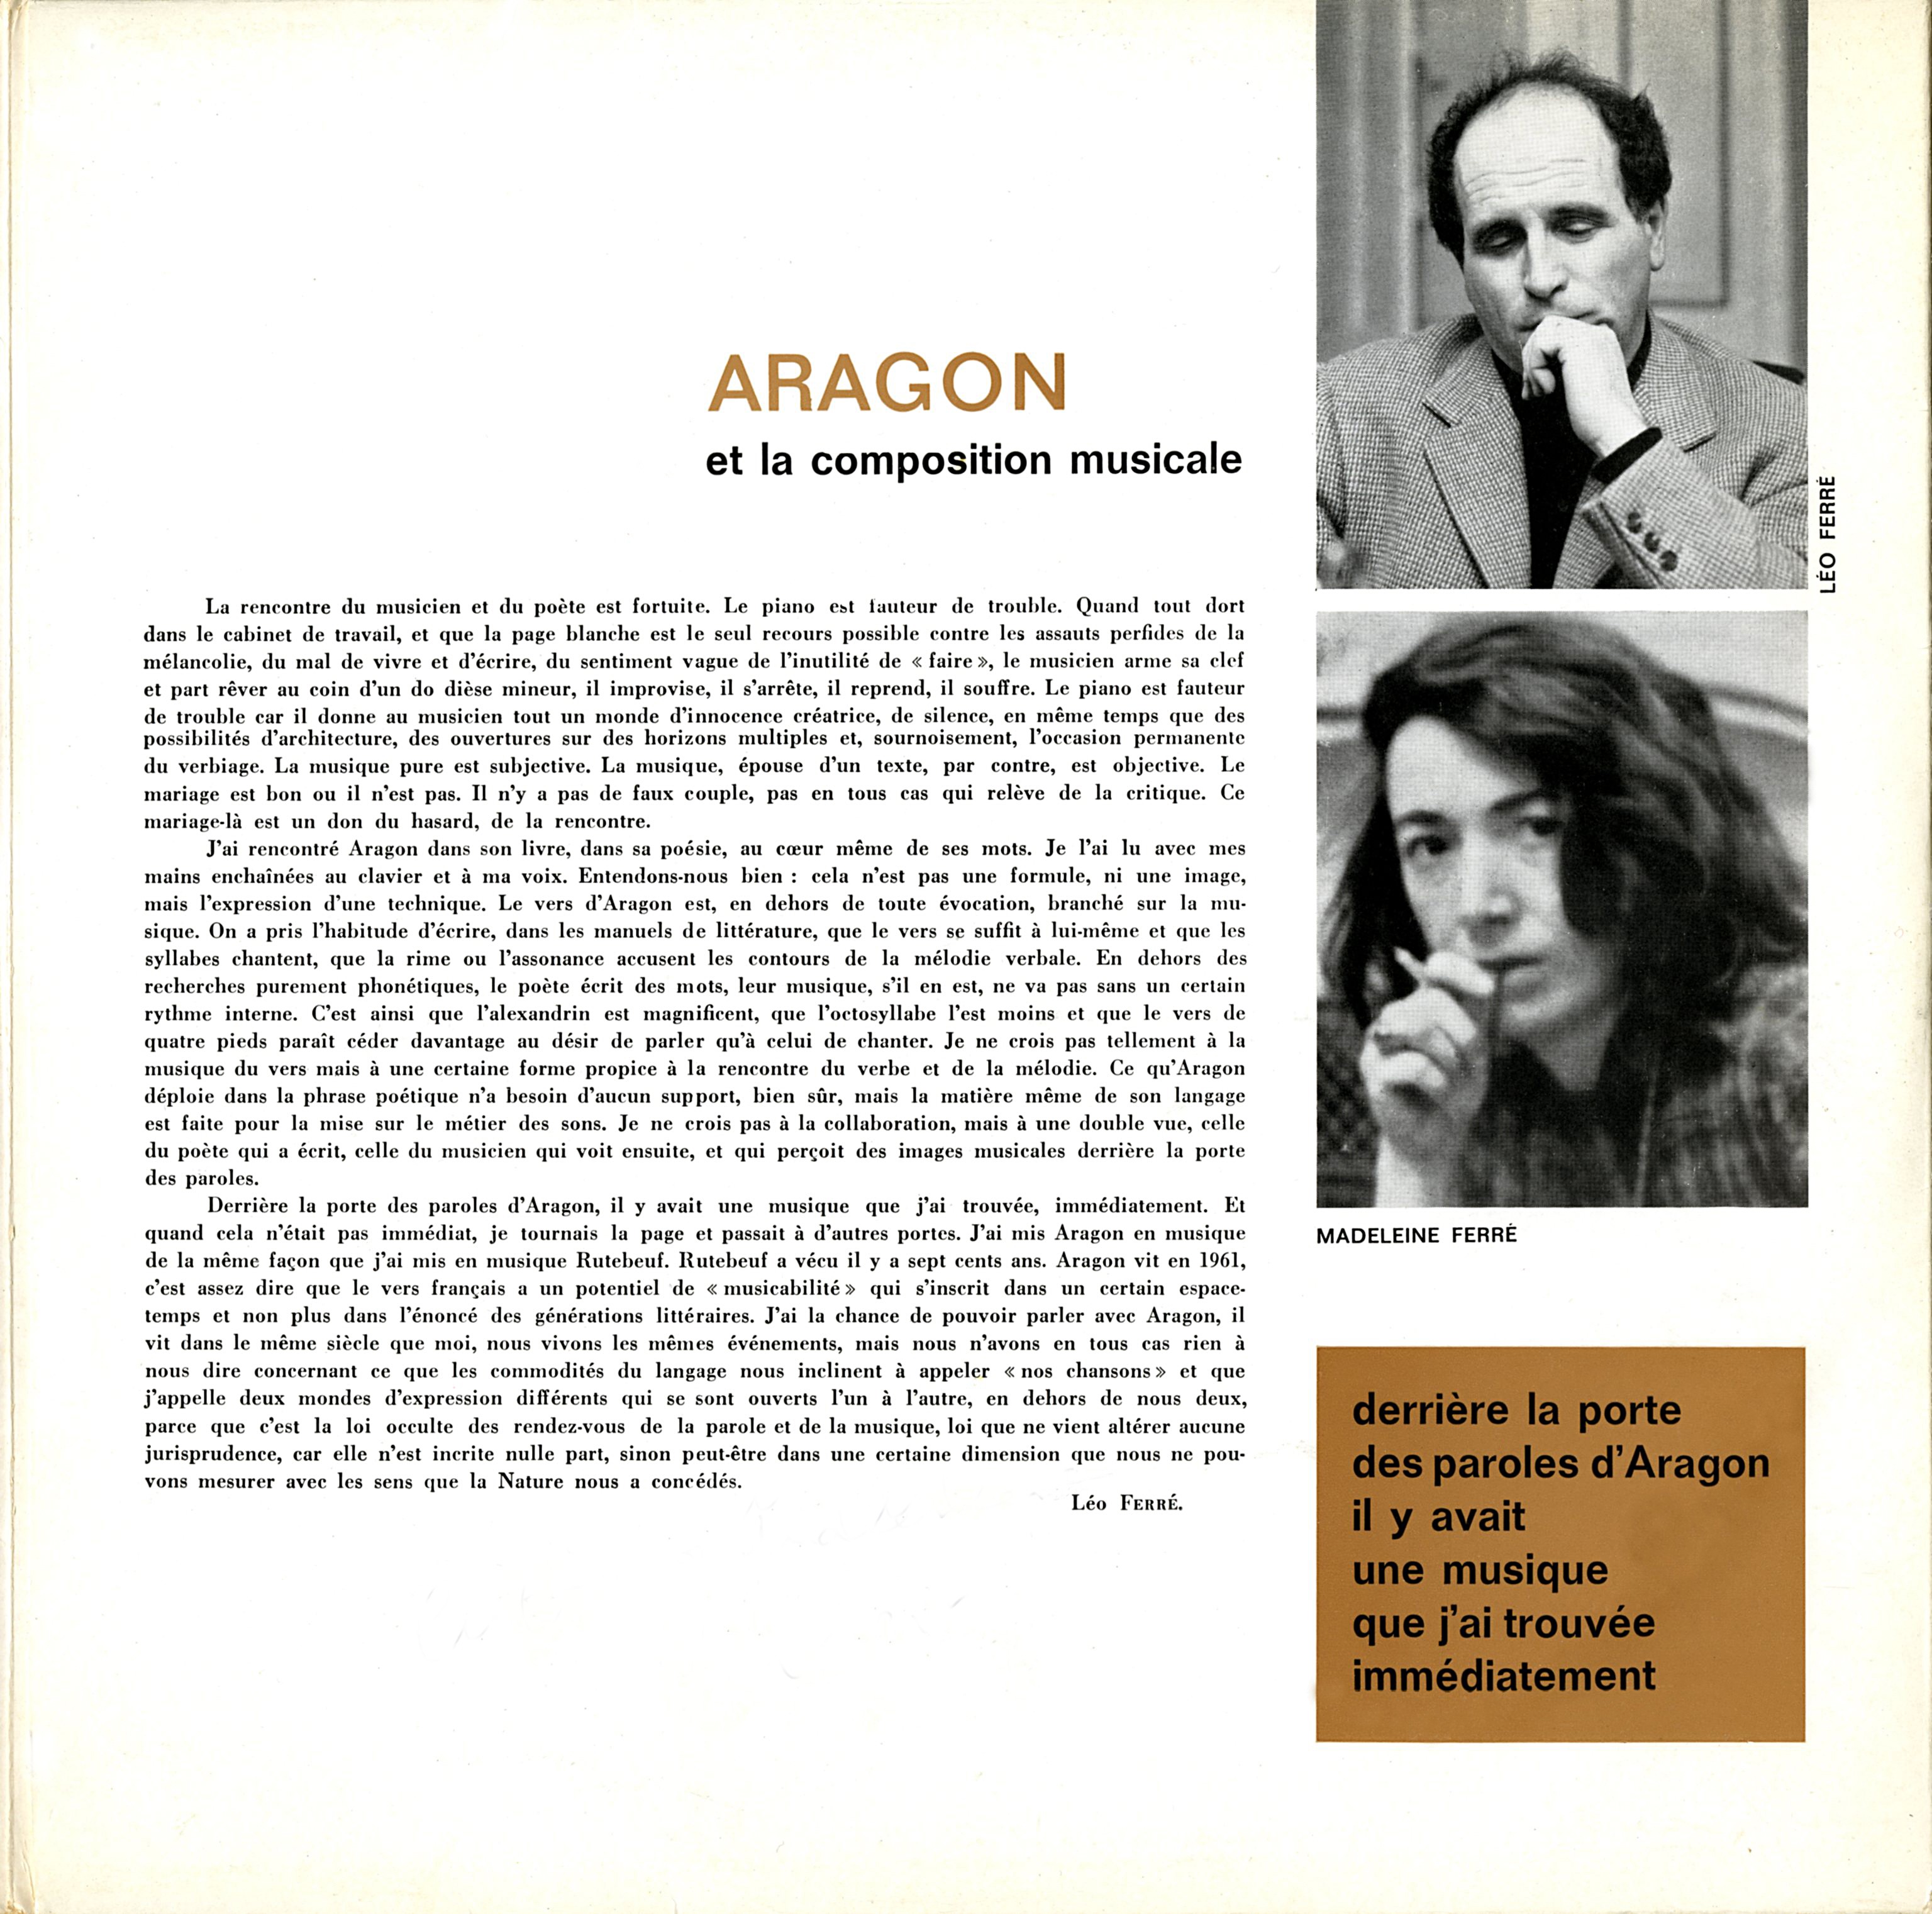 Les chansons d’Aragon chantées par Léo Ferré - Barclay 80 138